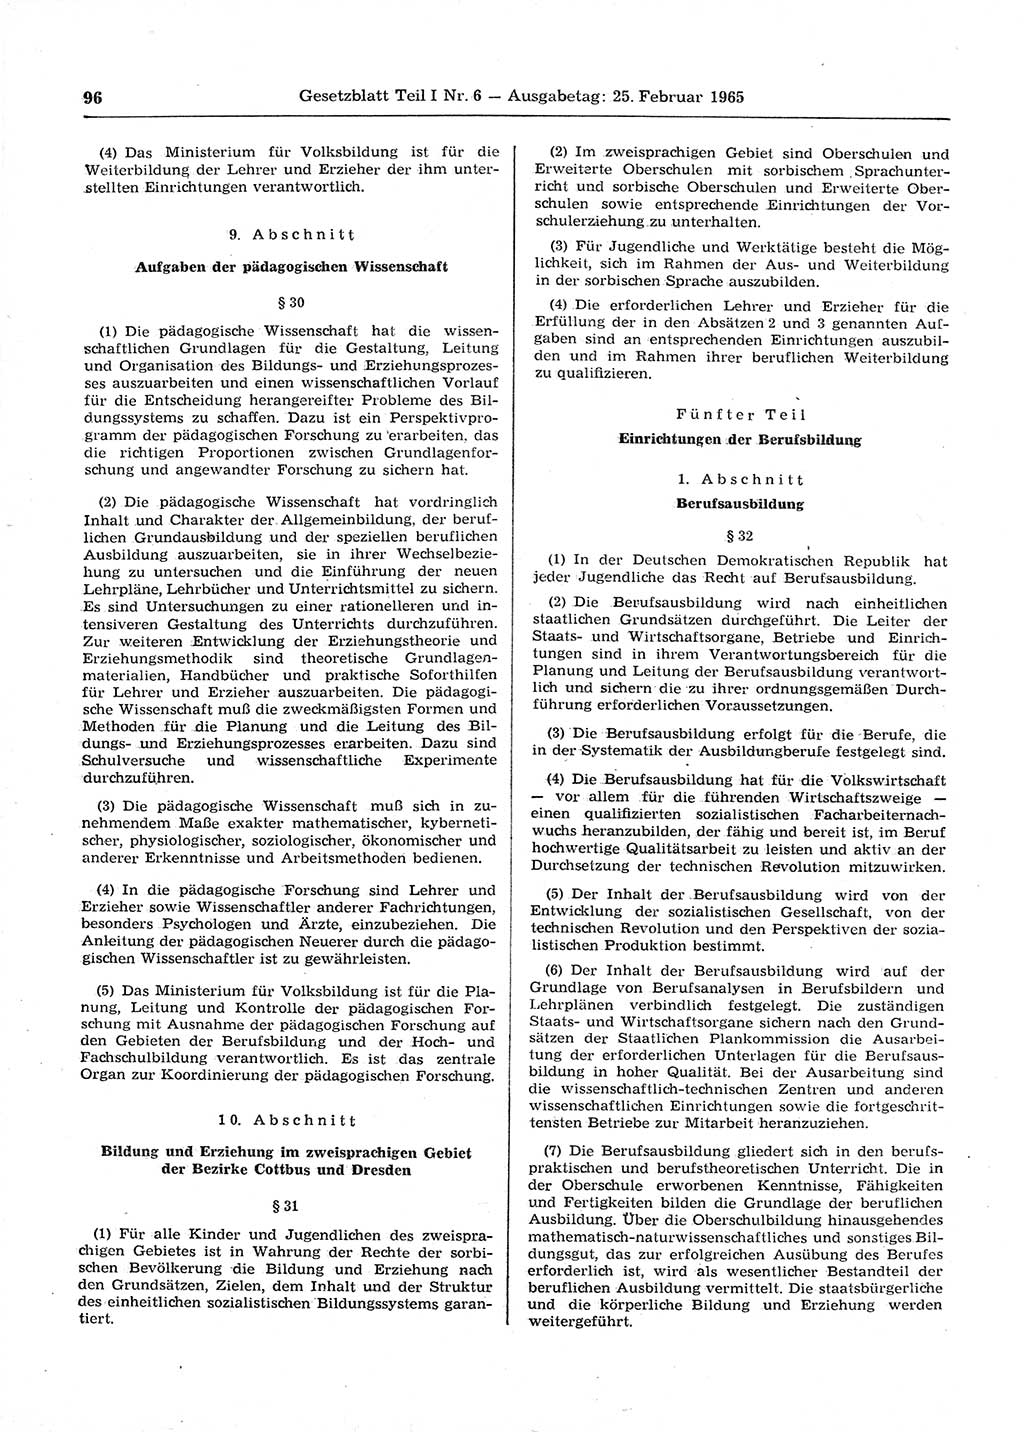 Gesetzblatt (GBl.) der Deutschen Demokratischen Republik (DDR) Teil Ⅰ 1965, Seite 96 (GBl. DDR Ⅰ 1965, S. 96)